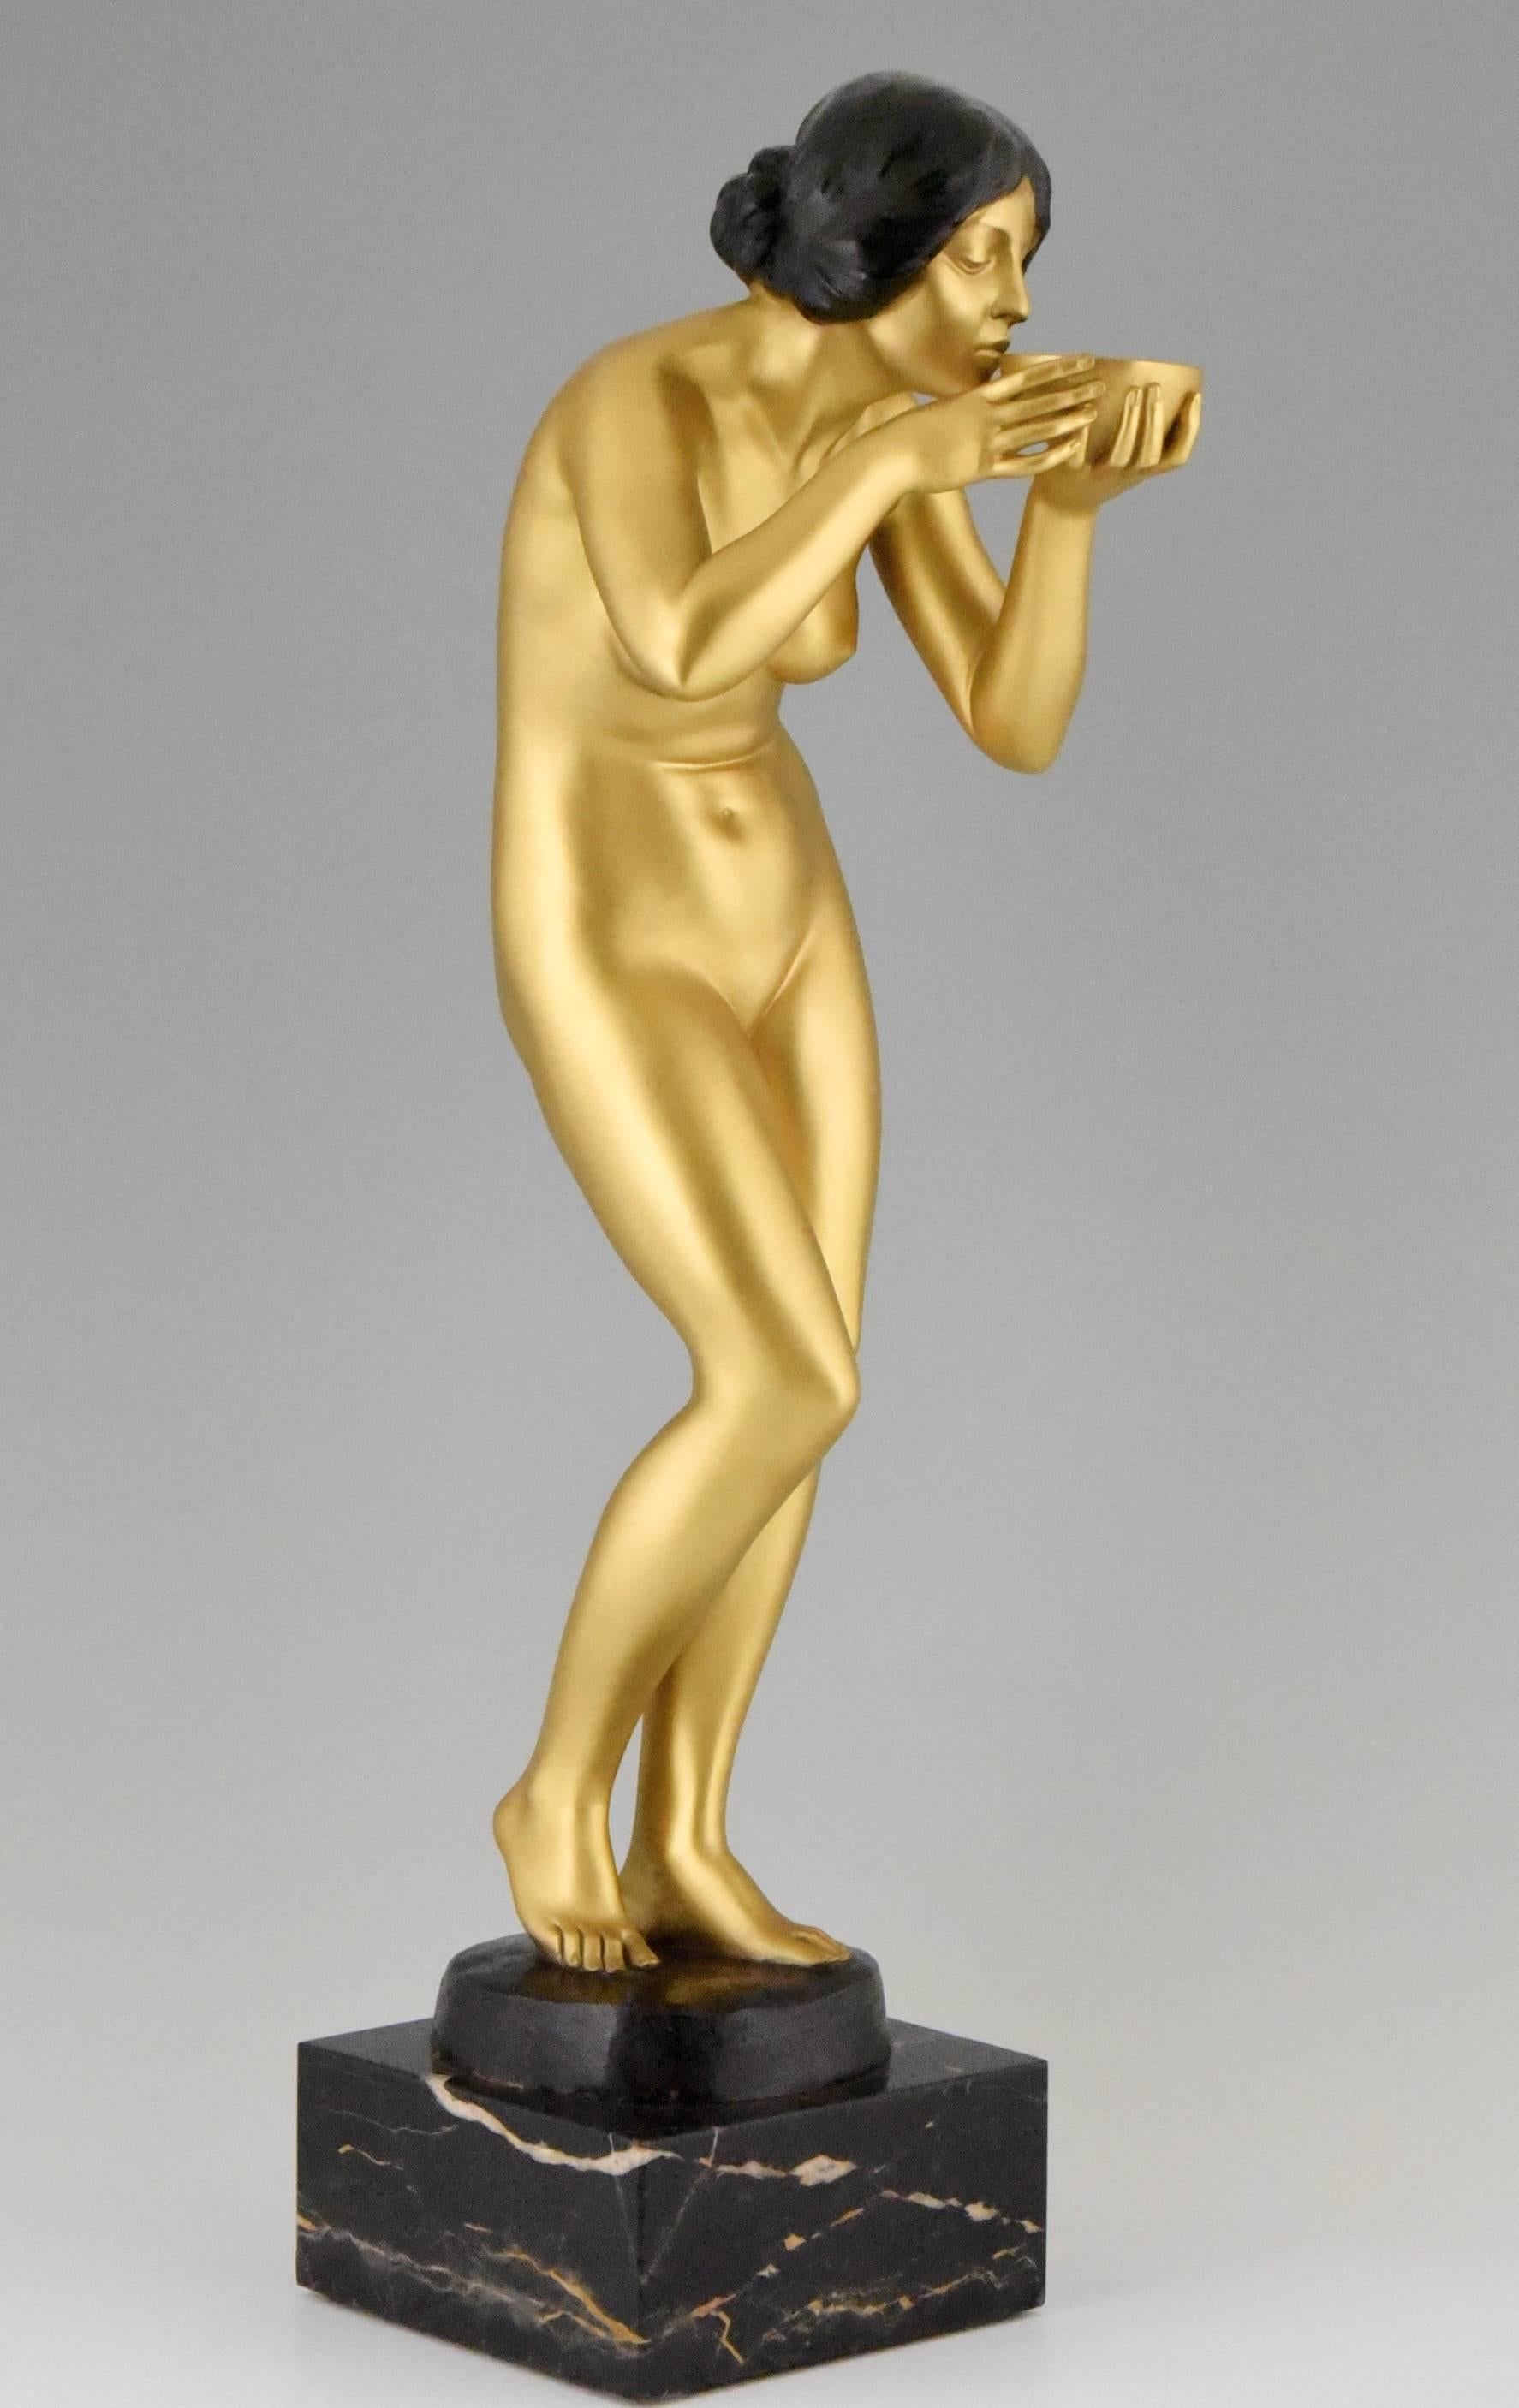 Gilt Art Nouveau gilt bronze sculpture of a nude by Victor Seifert, 1900 Germany